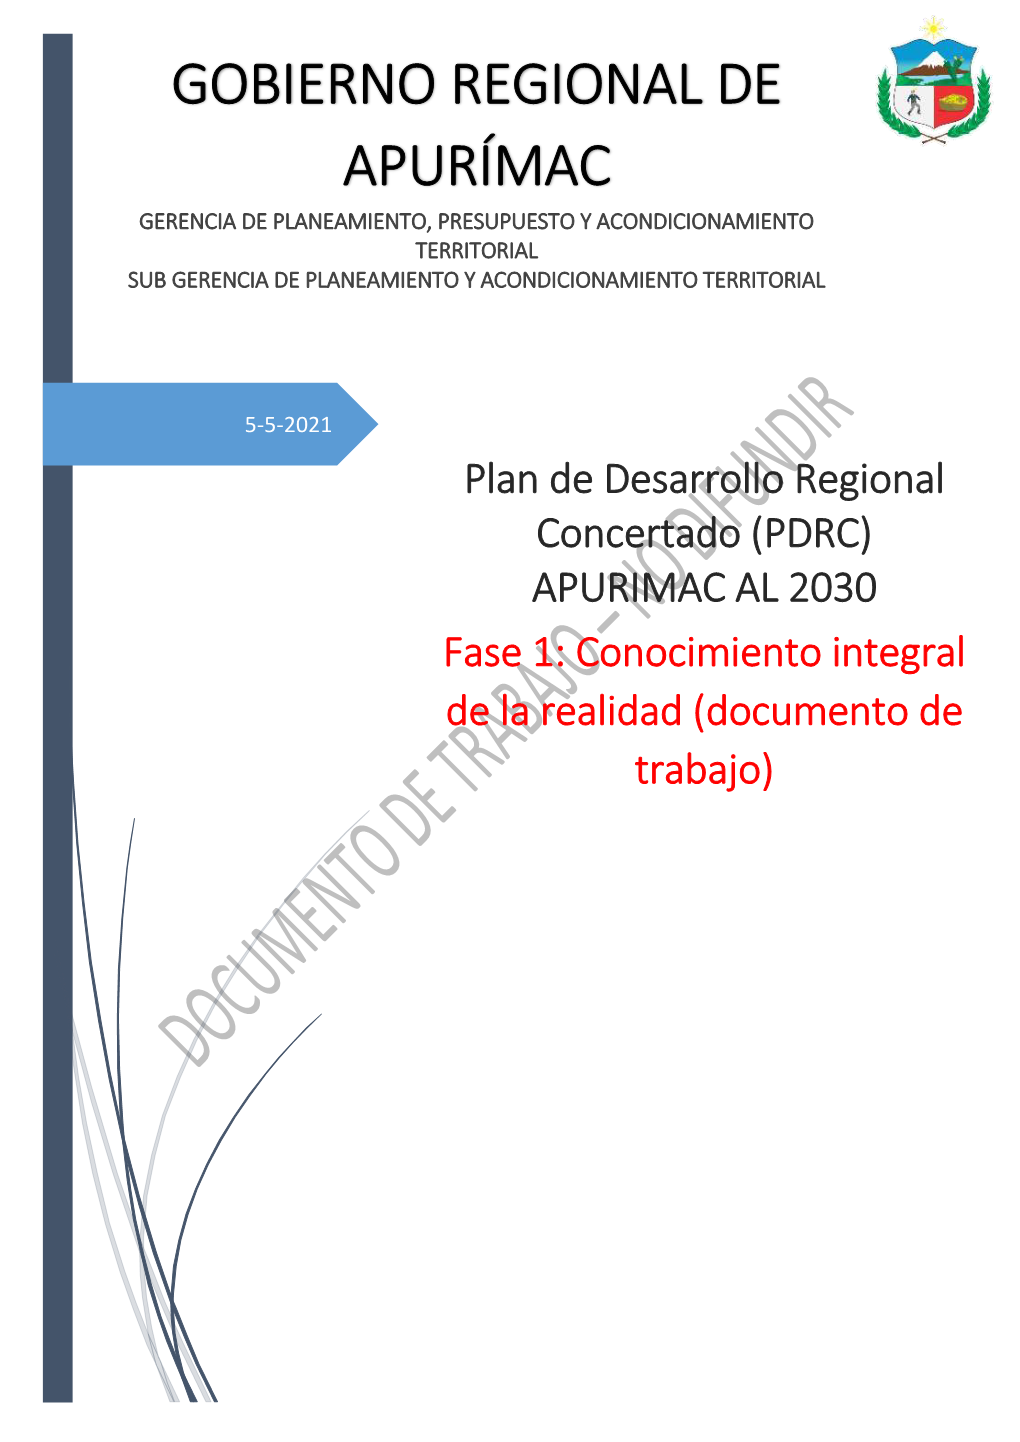 Plan De Desarrollo Regional Concertado (PDRC) APURIMAC AL 2030 Fase 1: Conocimiento Integral De La Realidad (Documento De Trabajo)